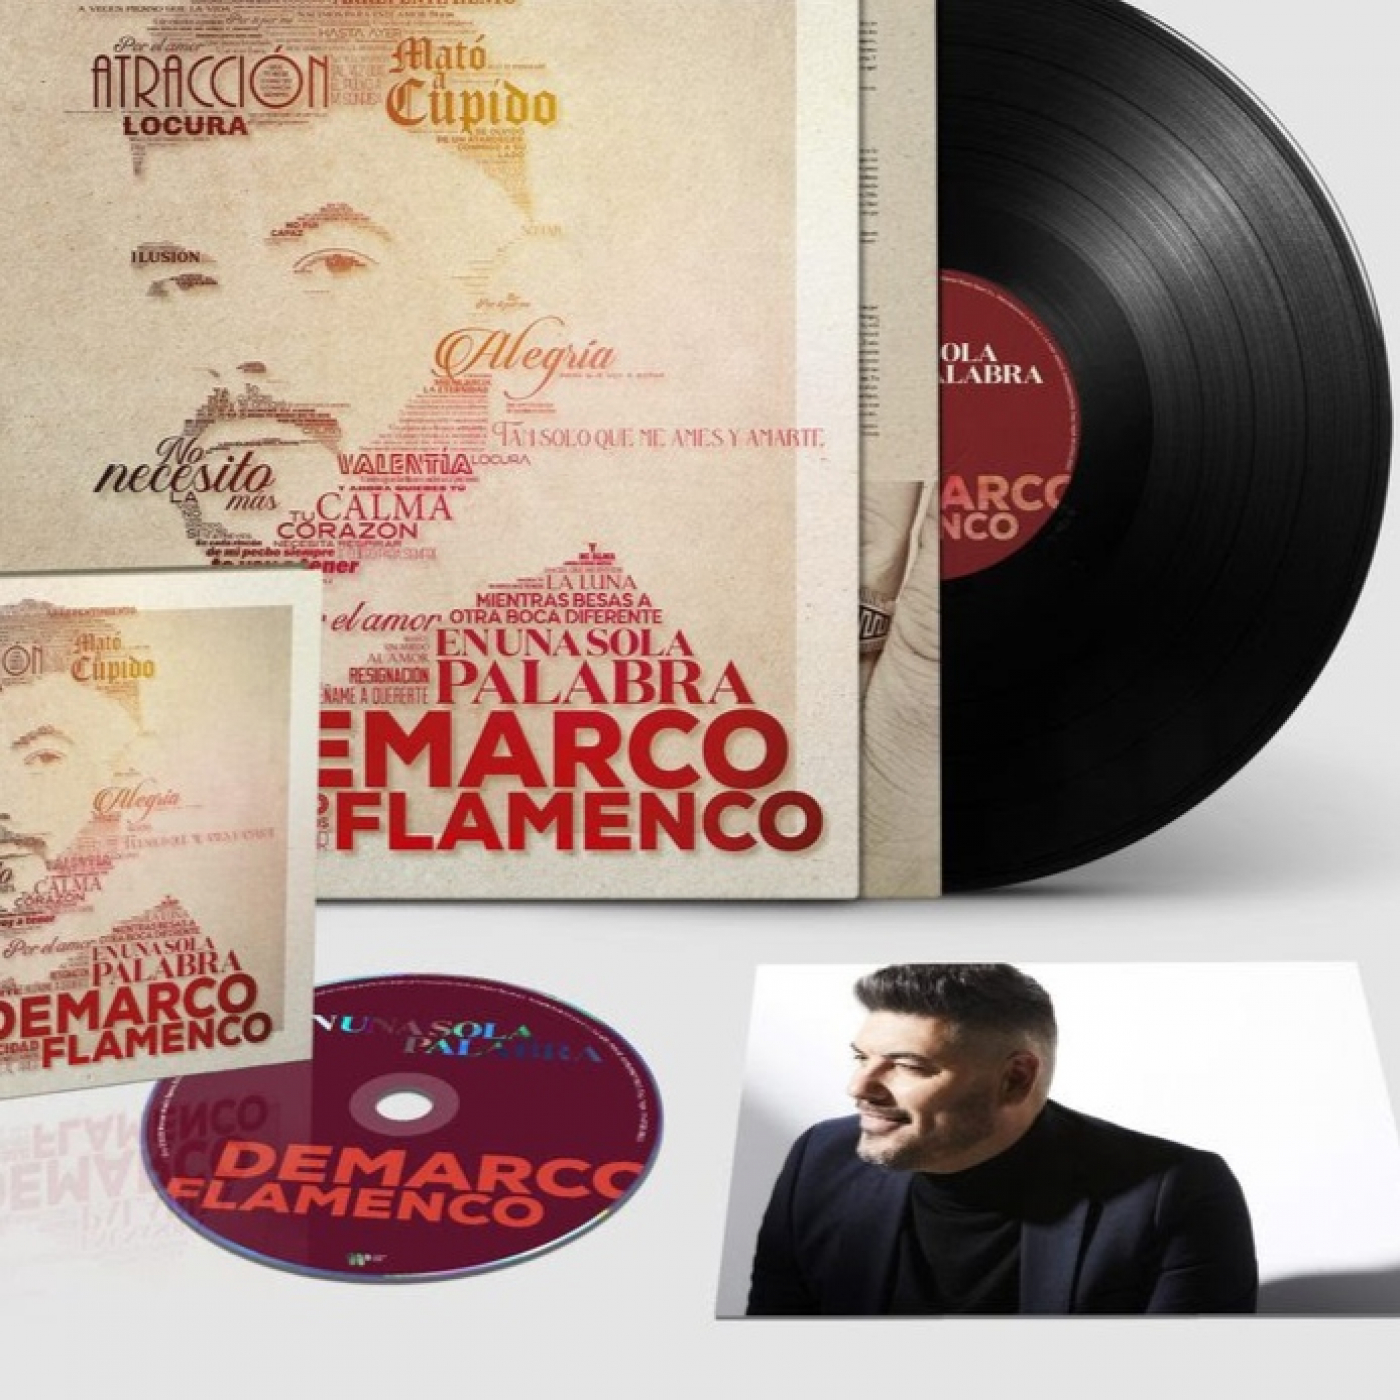 Demarco Flamenco nos presenta ”En una sola palabra”